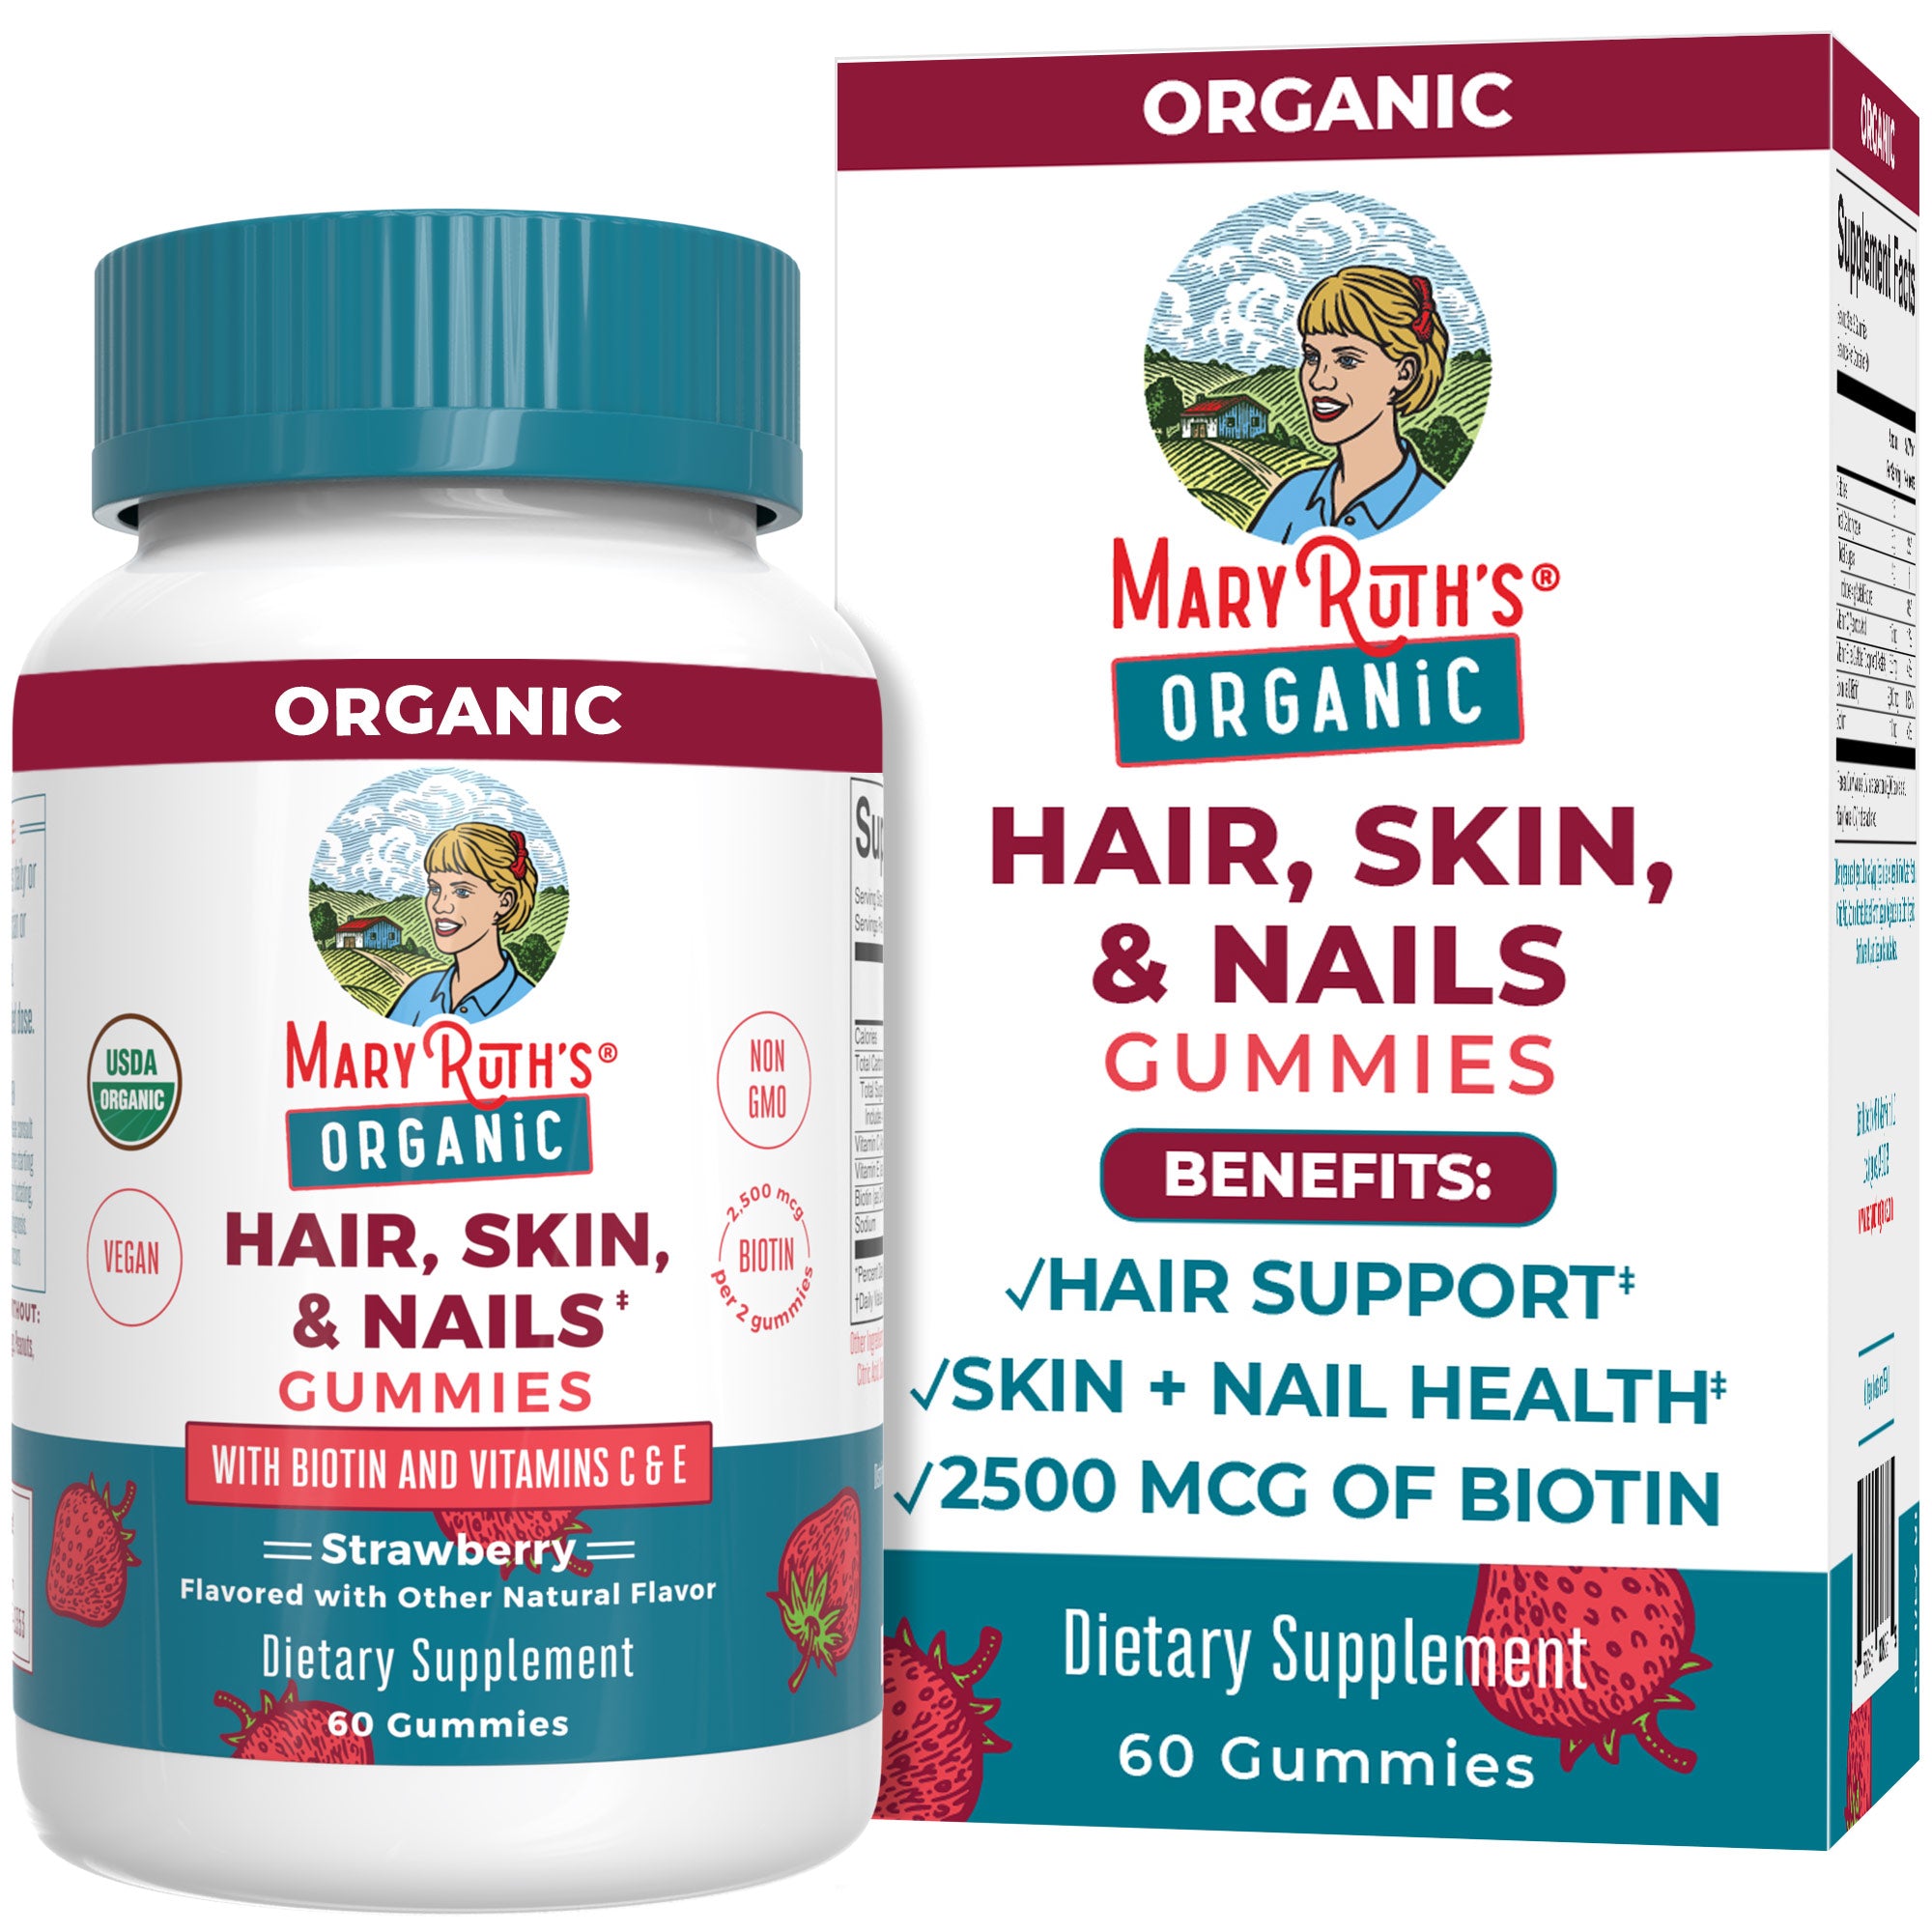 Organic Hair, Skin, & Nails Gummies